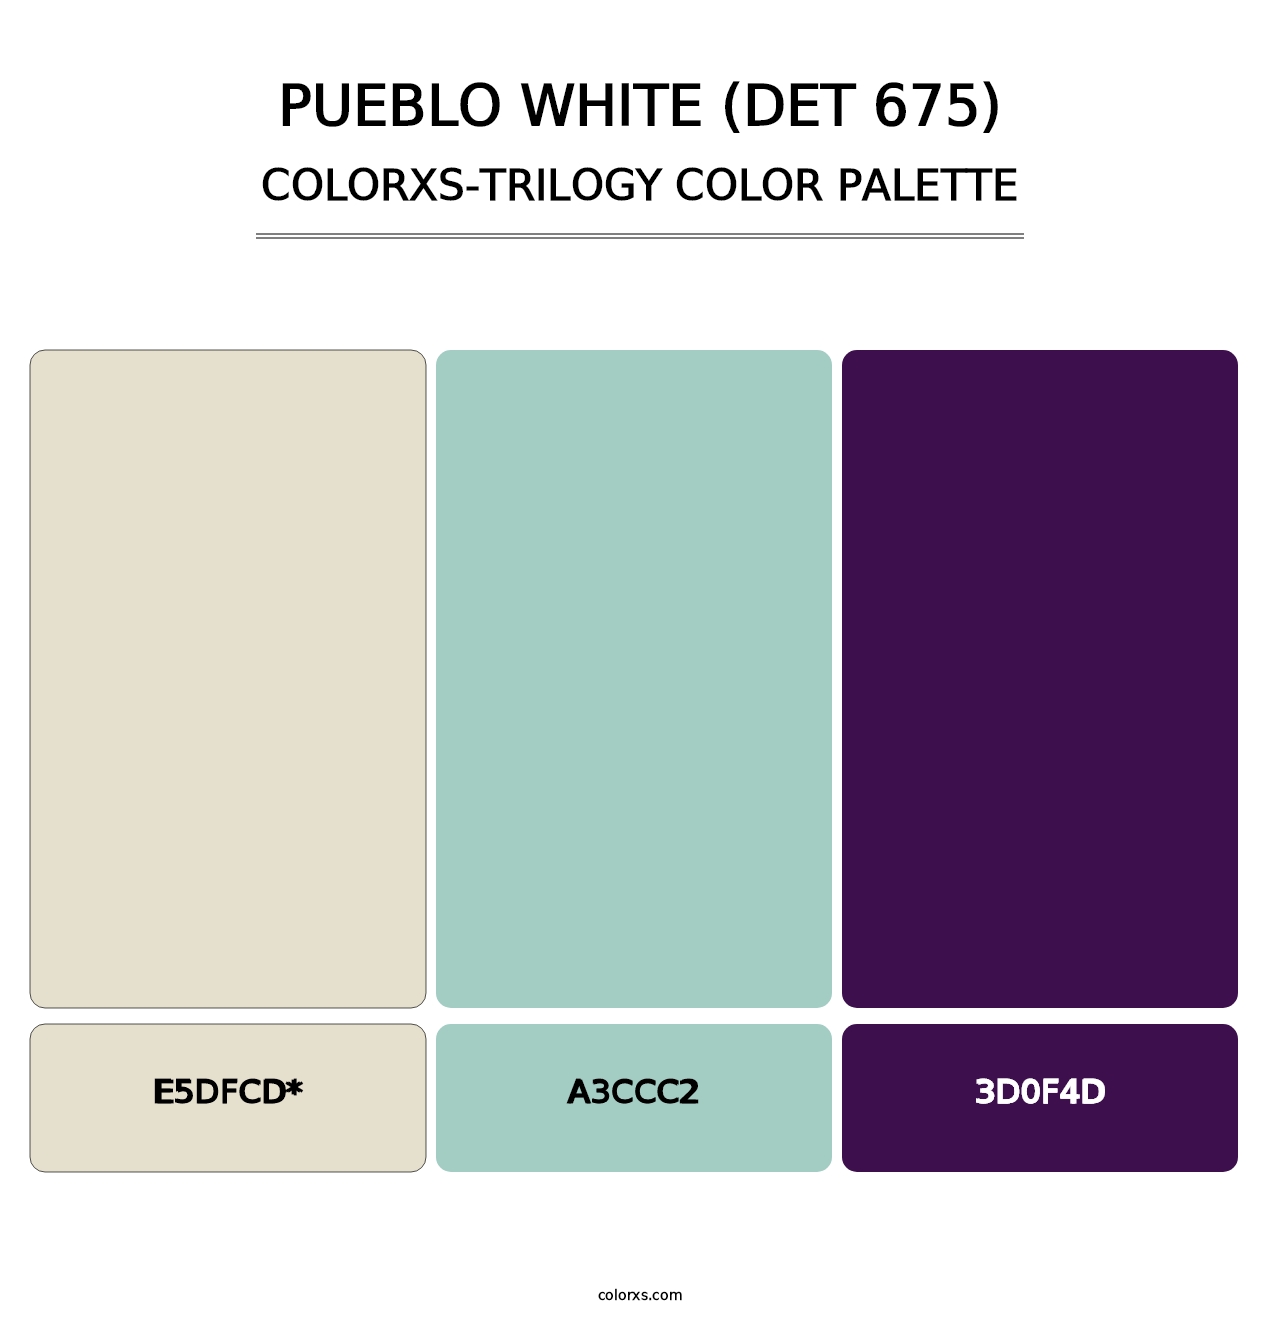 Pueblo White (DET 675) - Colorxs Trilogy Palette